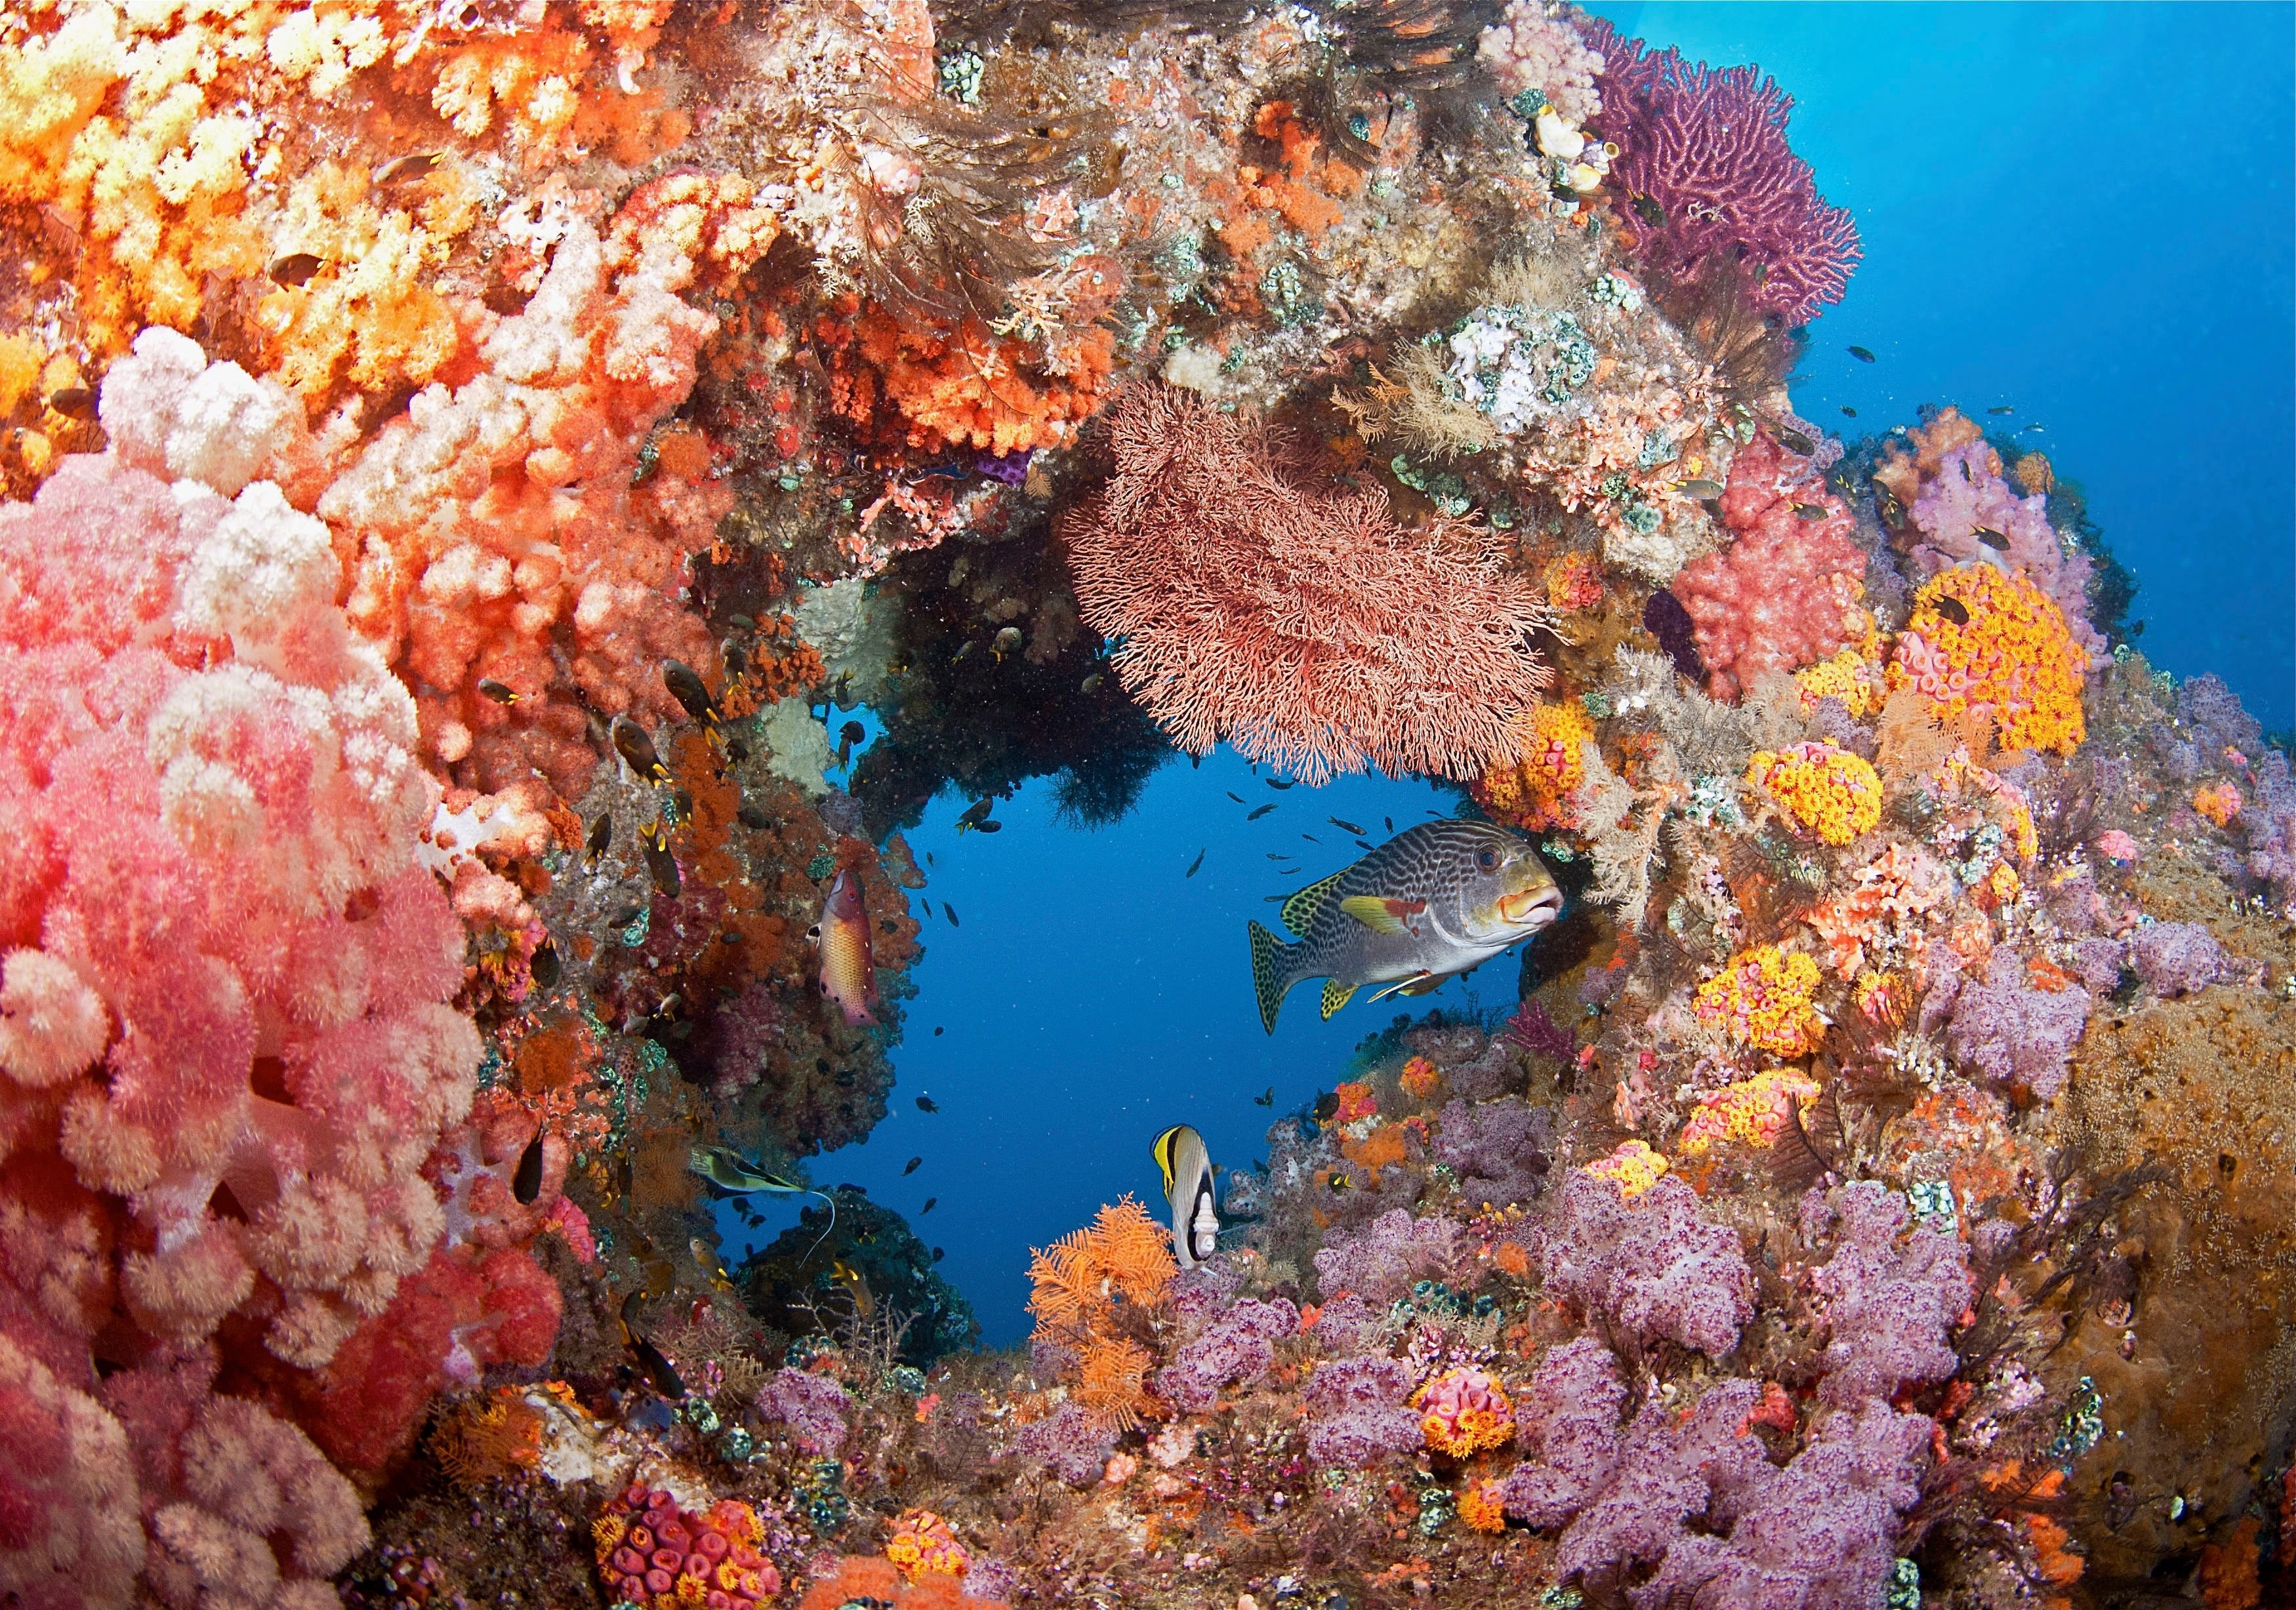 More fora. Крылатка рыба Шарм Эль Шейх. Раджа-Ампат рифы. Коралловое море Барьерный риф. Коралловый риф в Шарм Эль Шейхе.